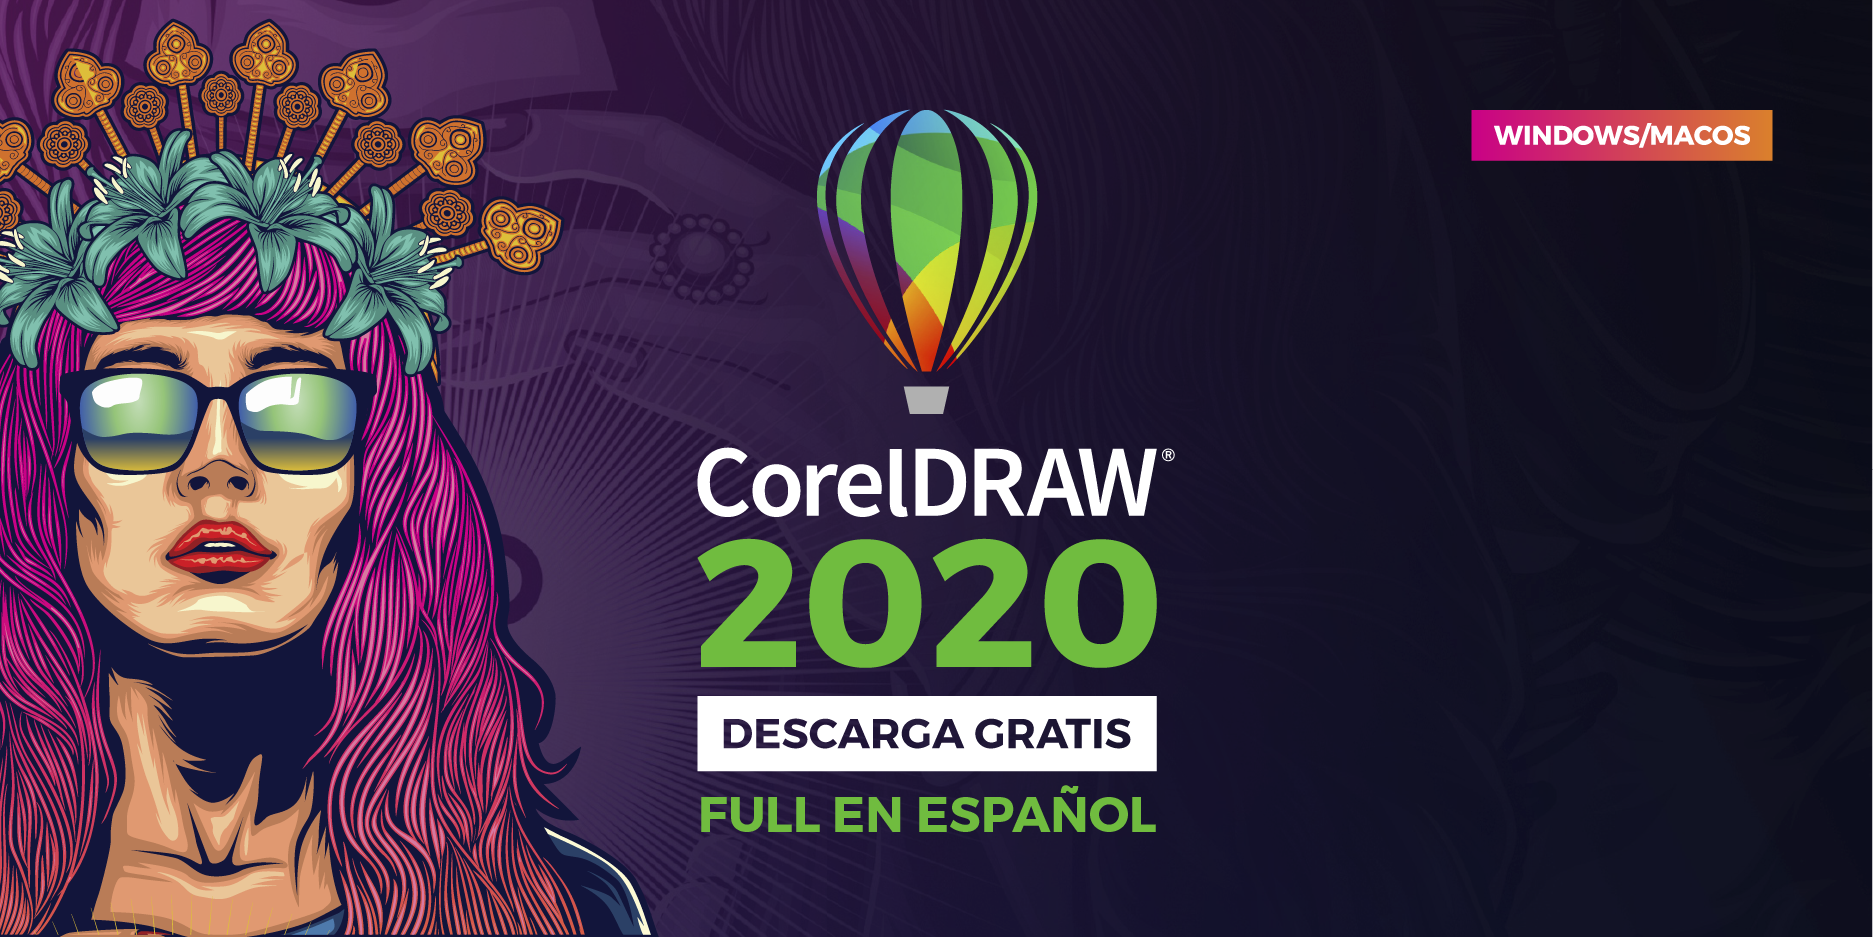 corel draw full crack 2020 para descargar en español